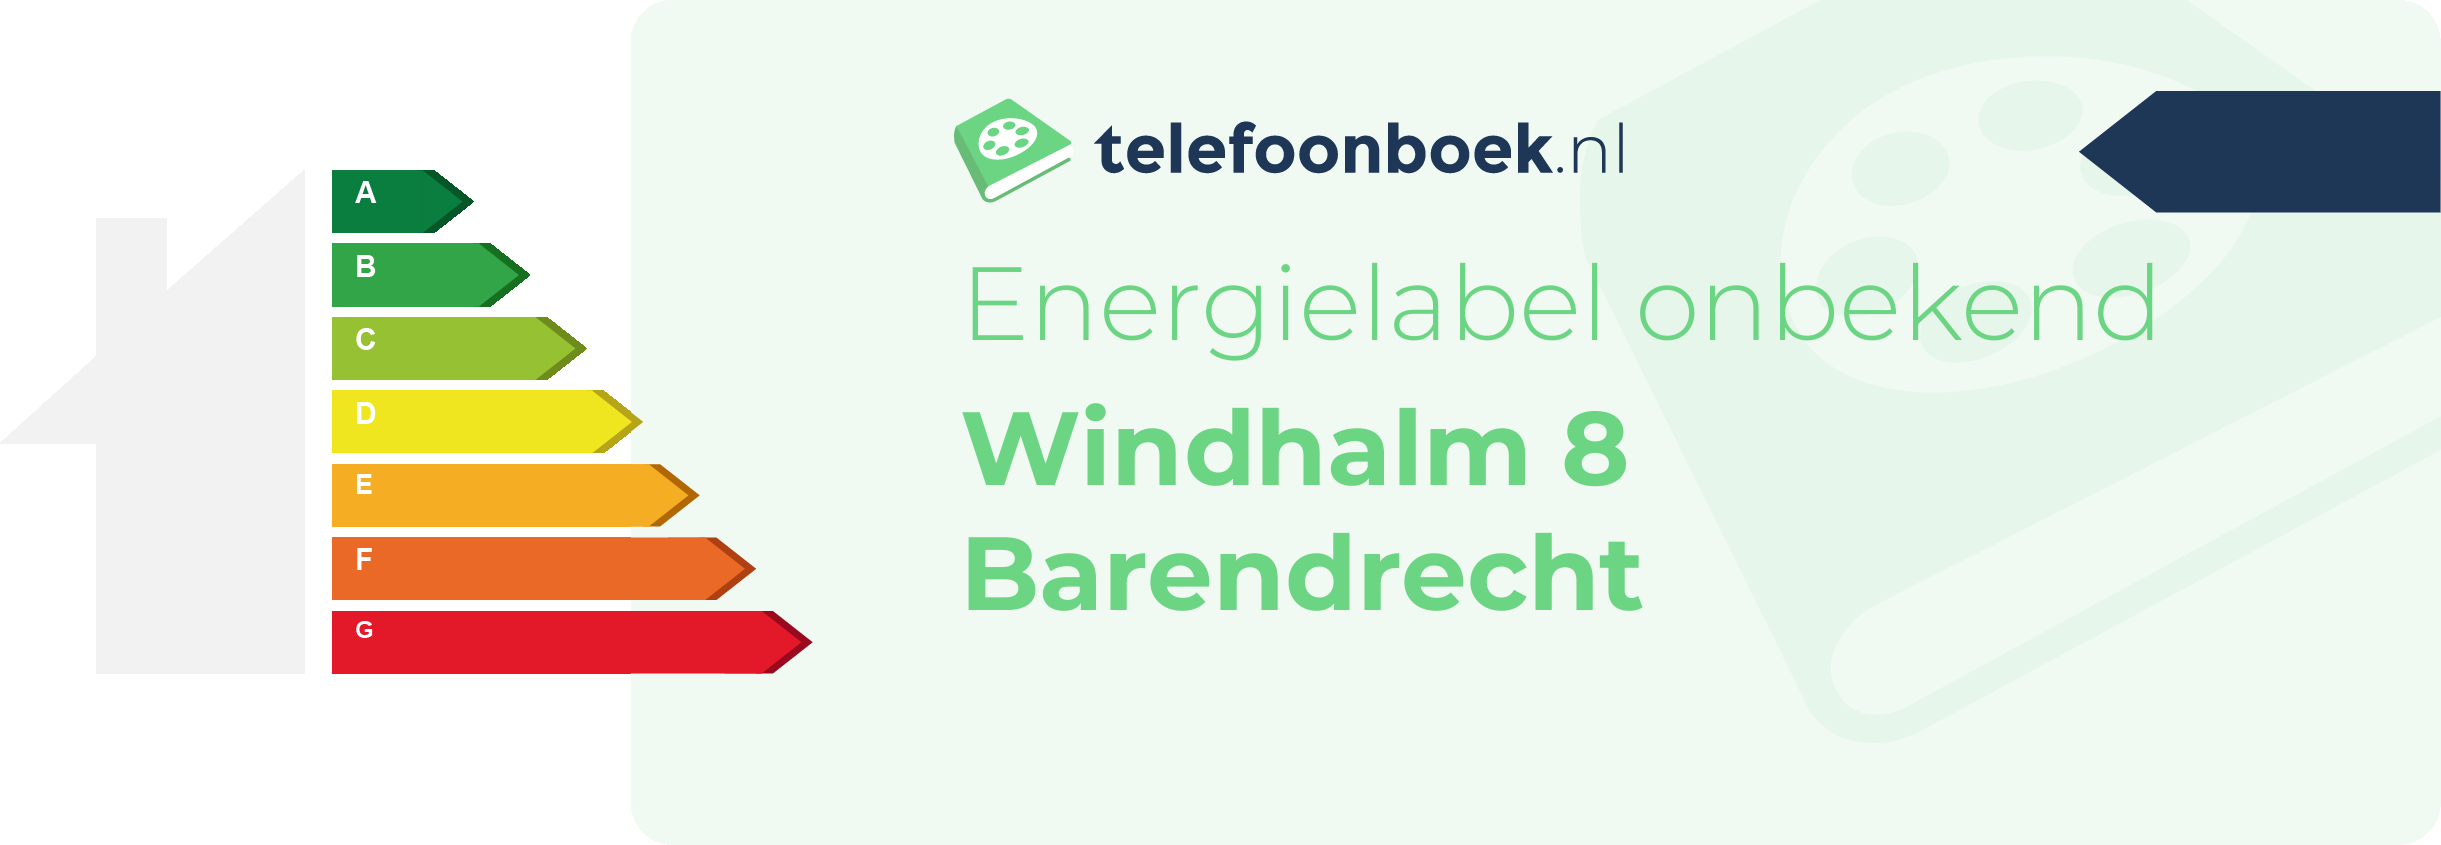 Energielabel Windhalm 8 Barendrecht